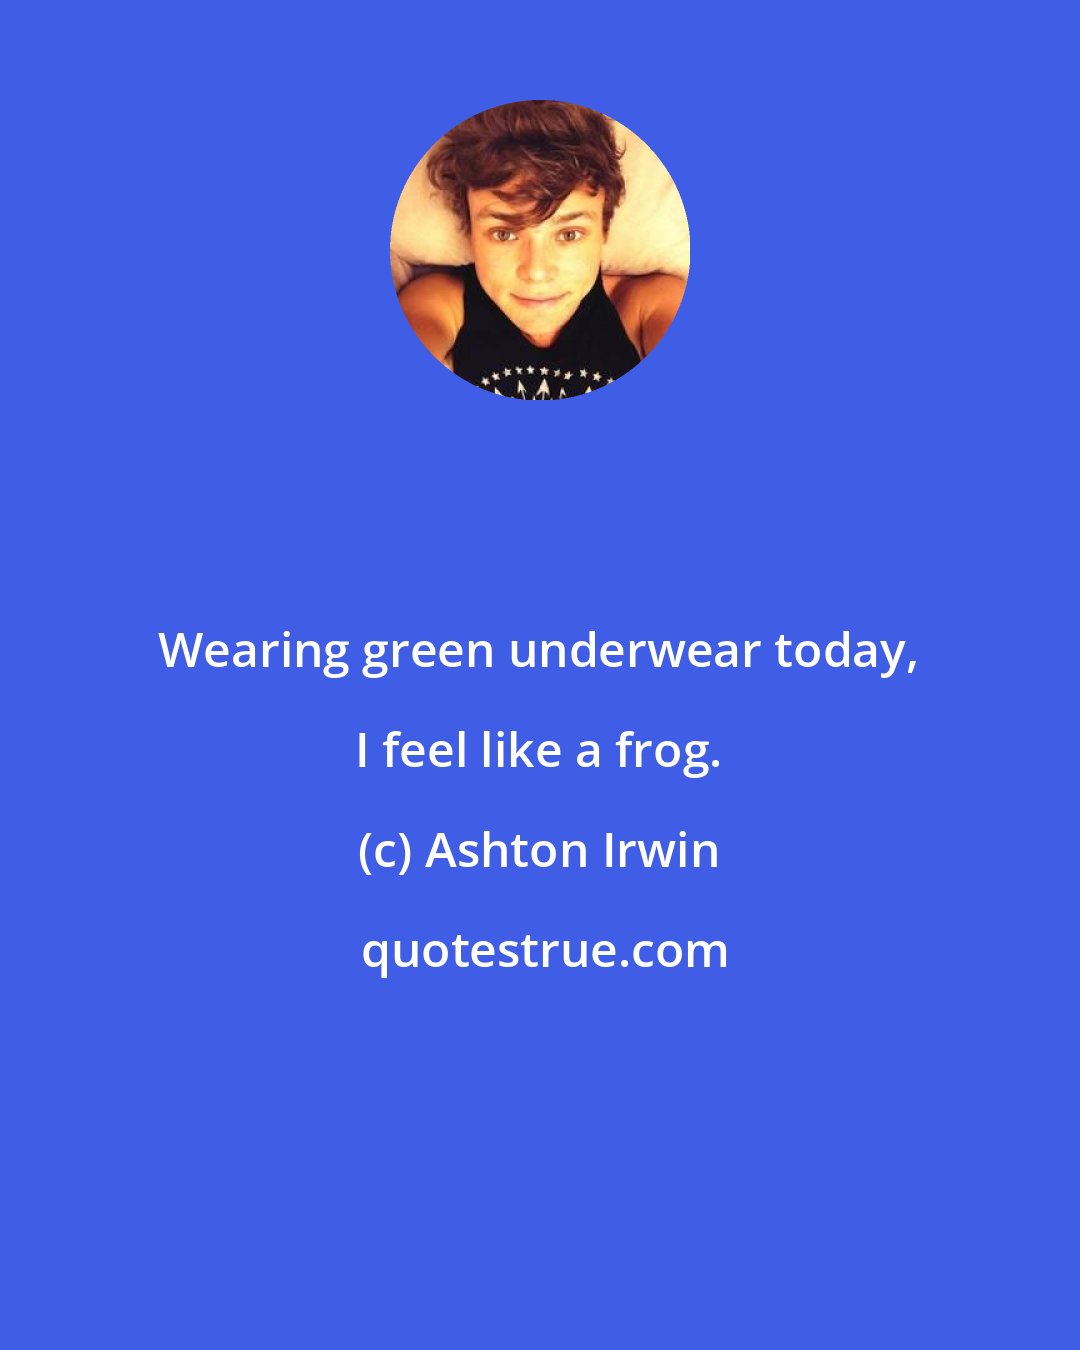 Ashton Irwin: Wearing green underwear today, I feel like a frog.